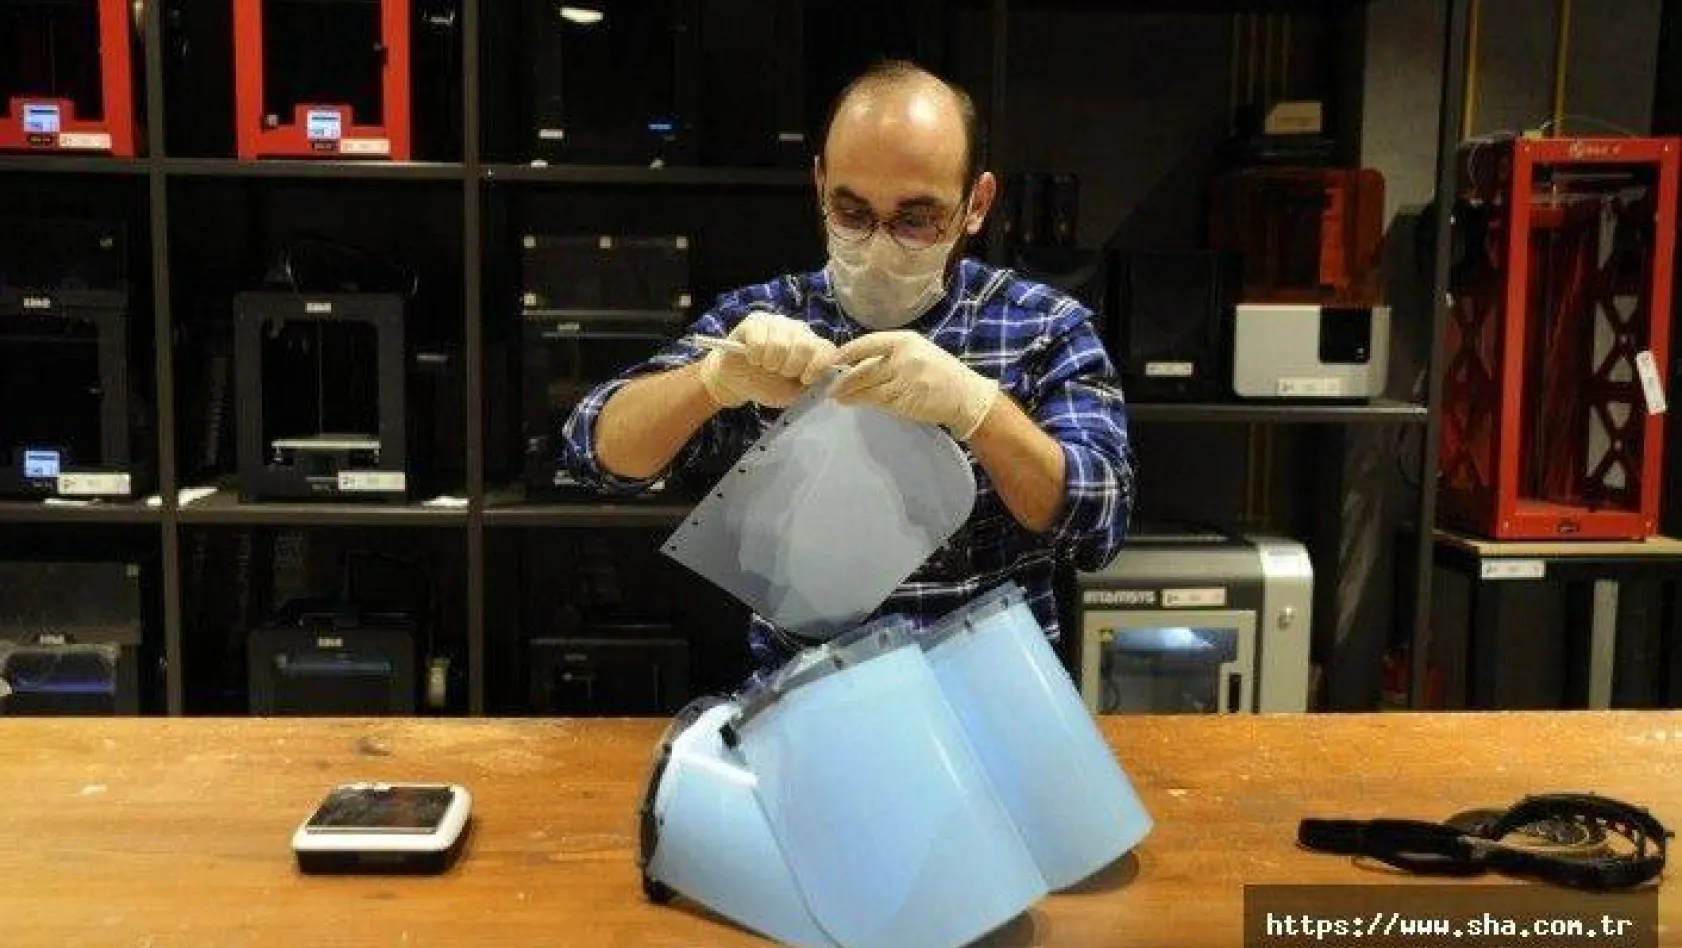 İTÜ ARI Teknokent'te 3D yazıcıda maske üretildi